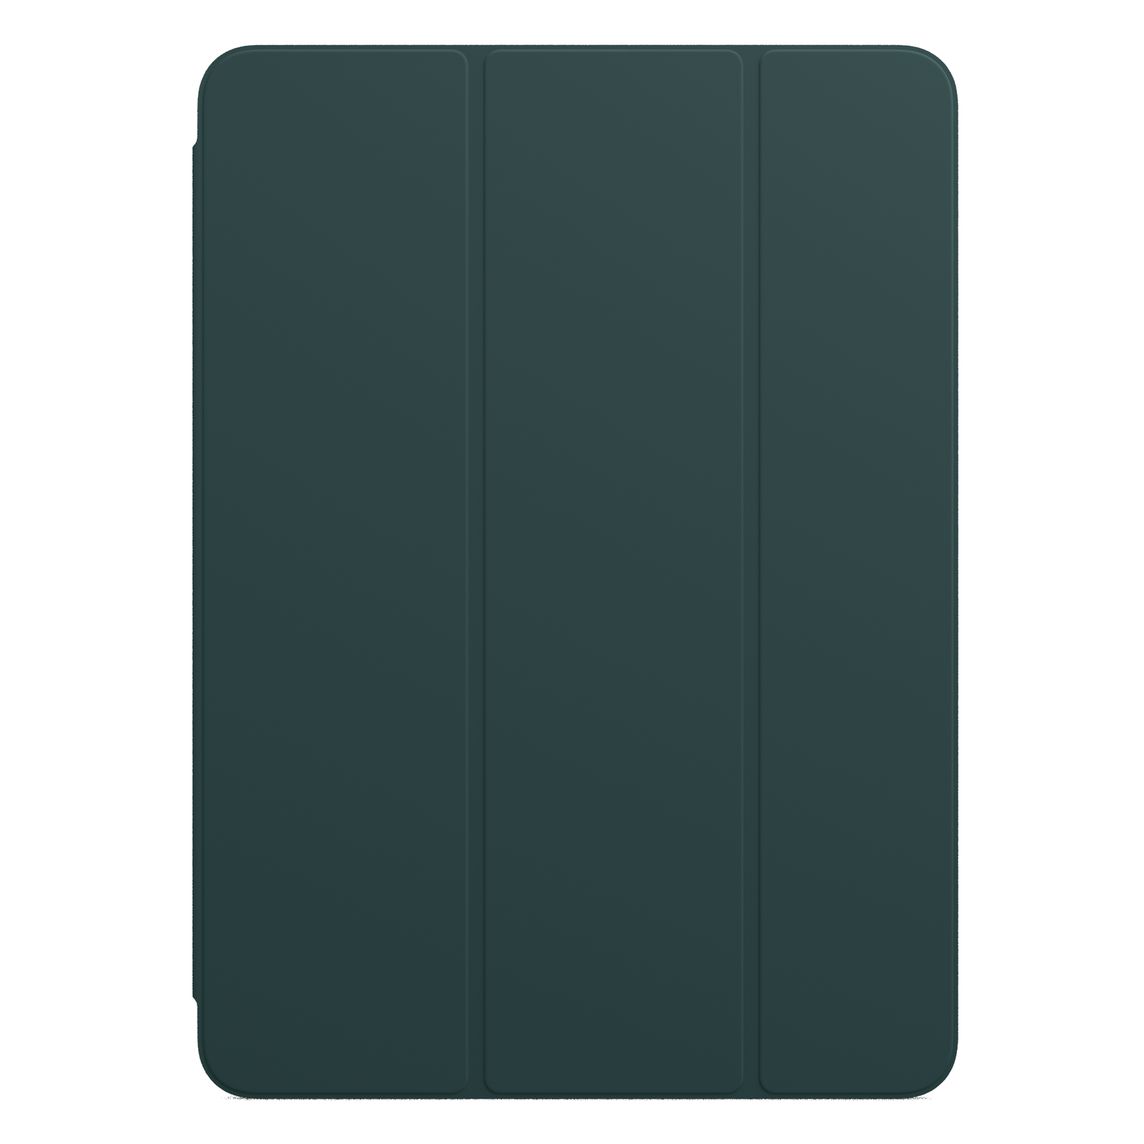 Фото — Чехол для планшета Apple Smart Folio для iPad Pro 11" (2‑го поколения), «штормовой зелёный»